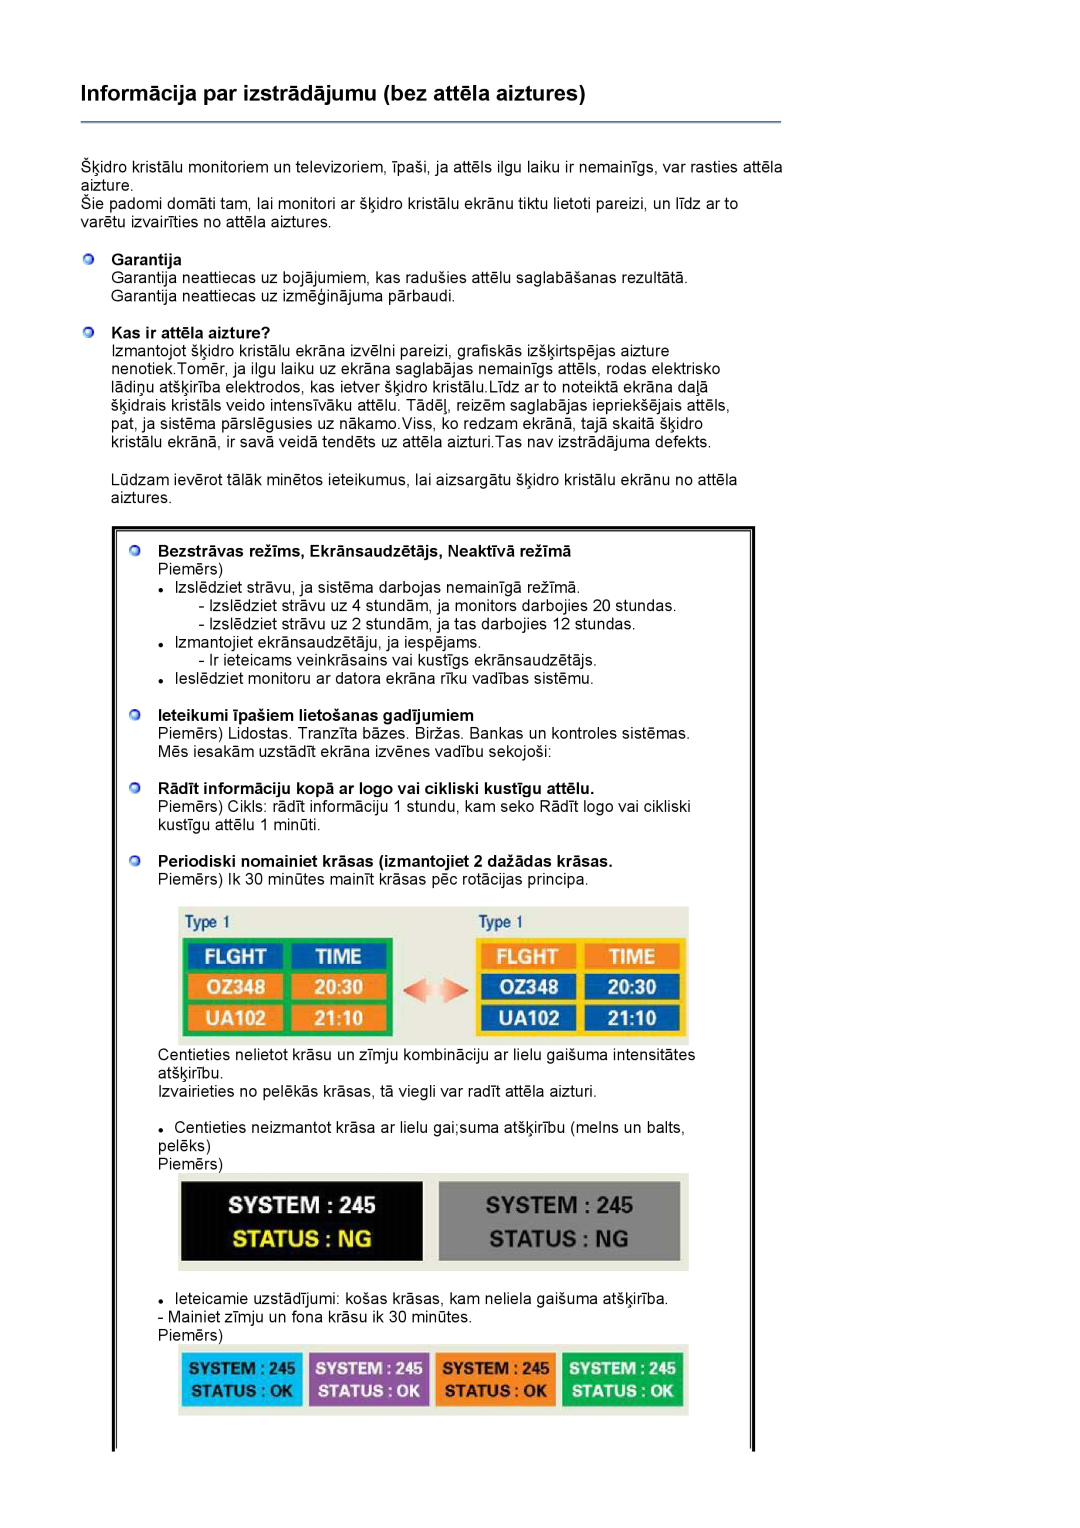 Samsung LS24HUCEBQ/EDC manual Garantija, Kas ir attēla aizture?, Bezstrāvas režīms, Ekrānsaudzētājs, Neaktīvā režīmā 